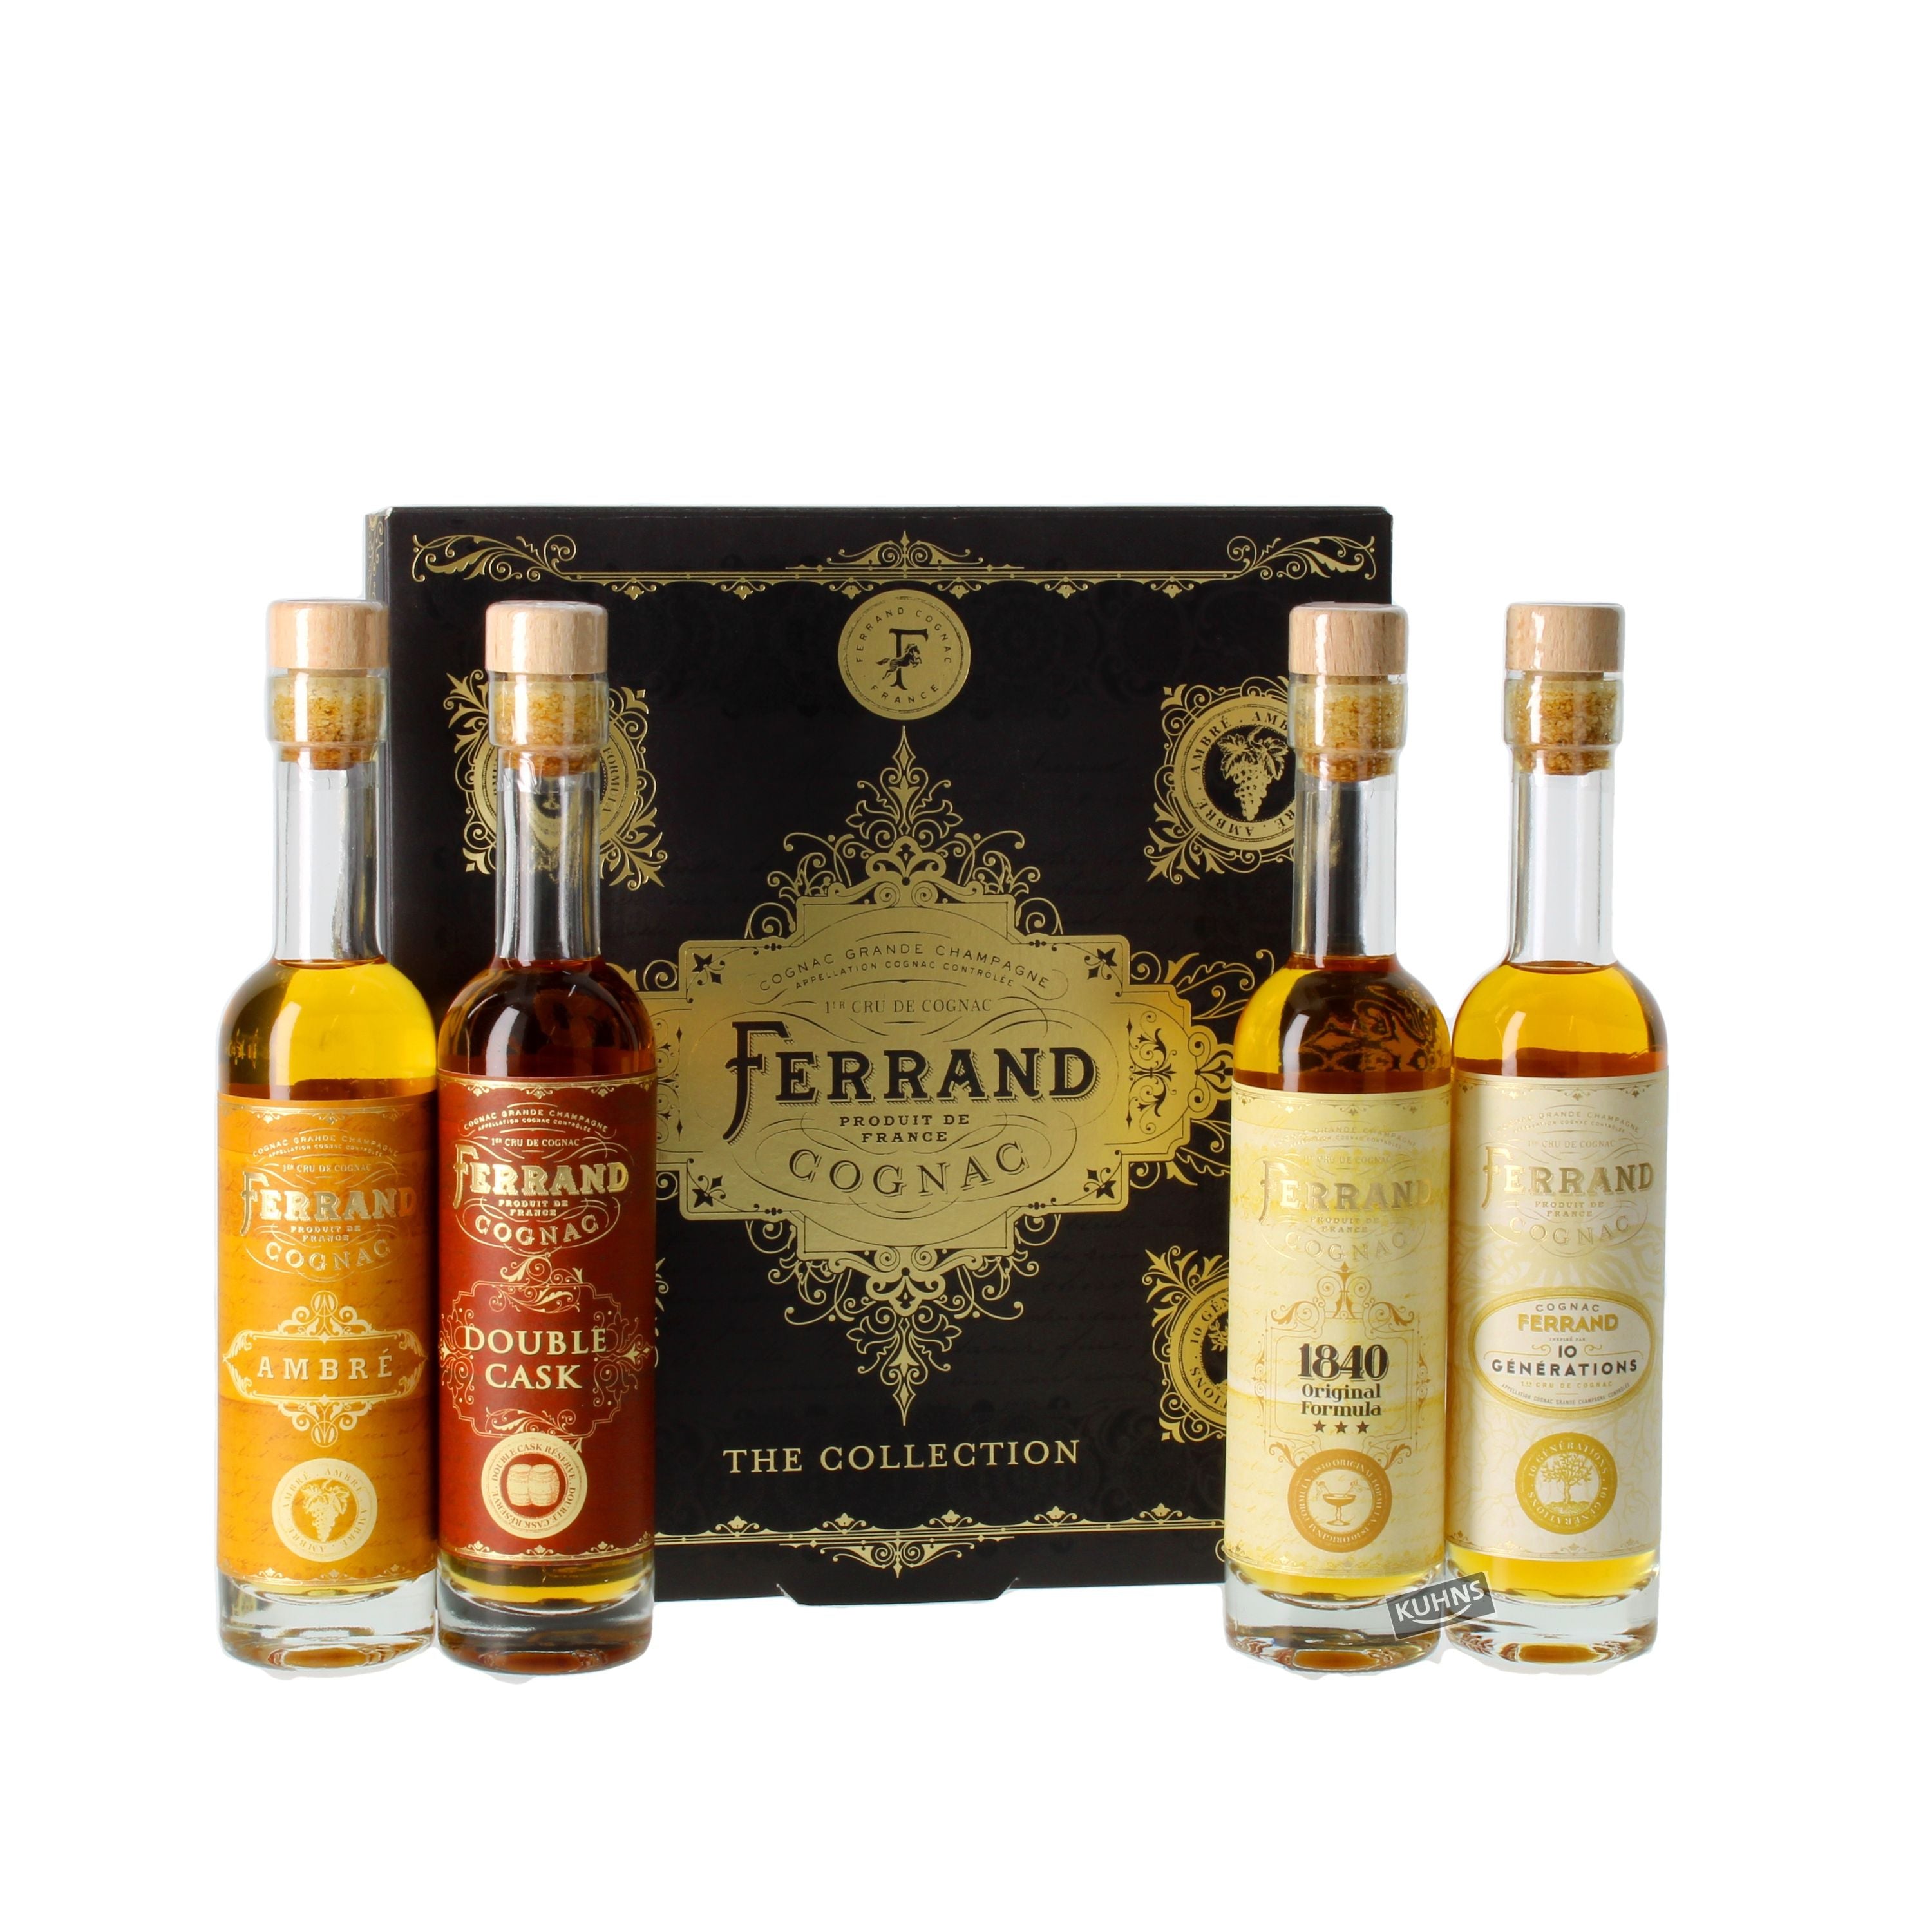 Pierre Ferrand Cognac Collection Box 0.4l, alc. 43.33% vol., Cognac France